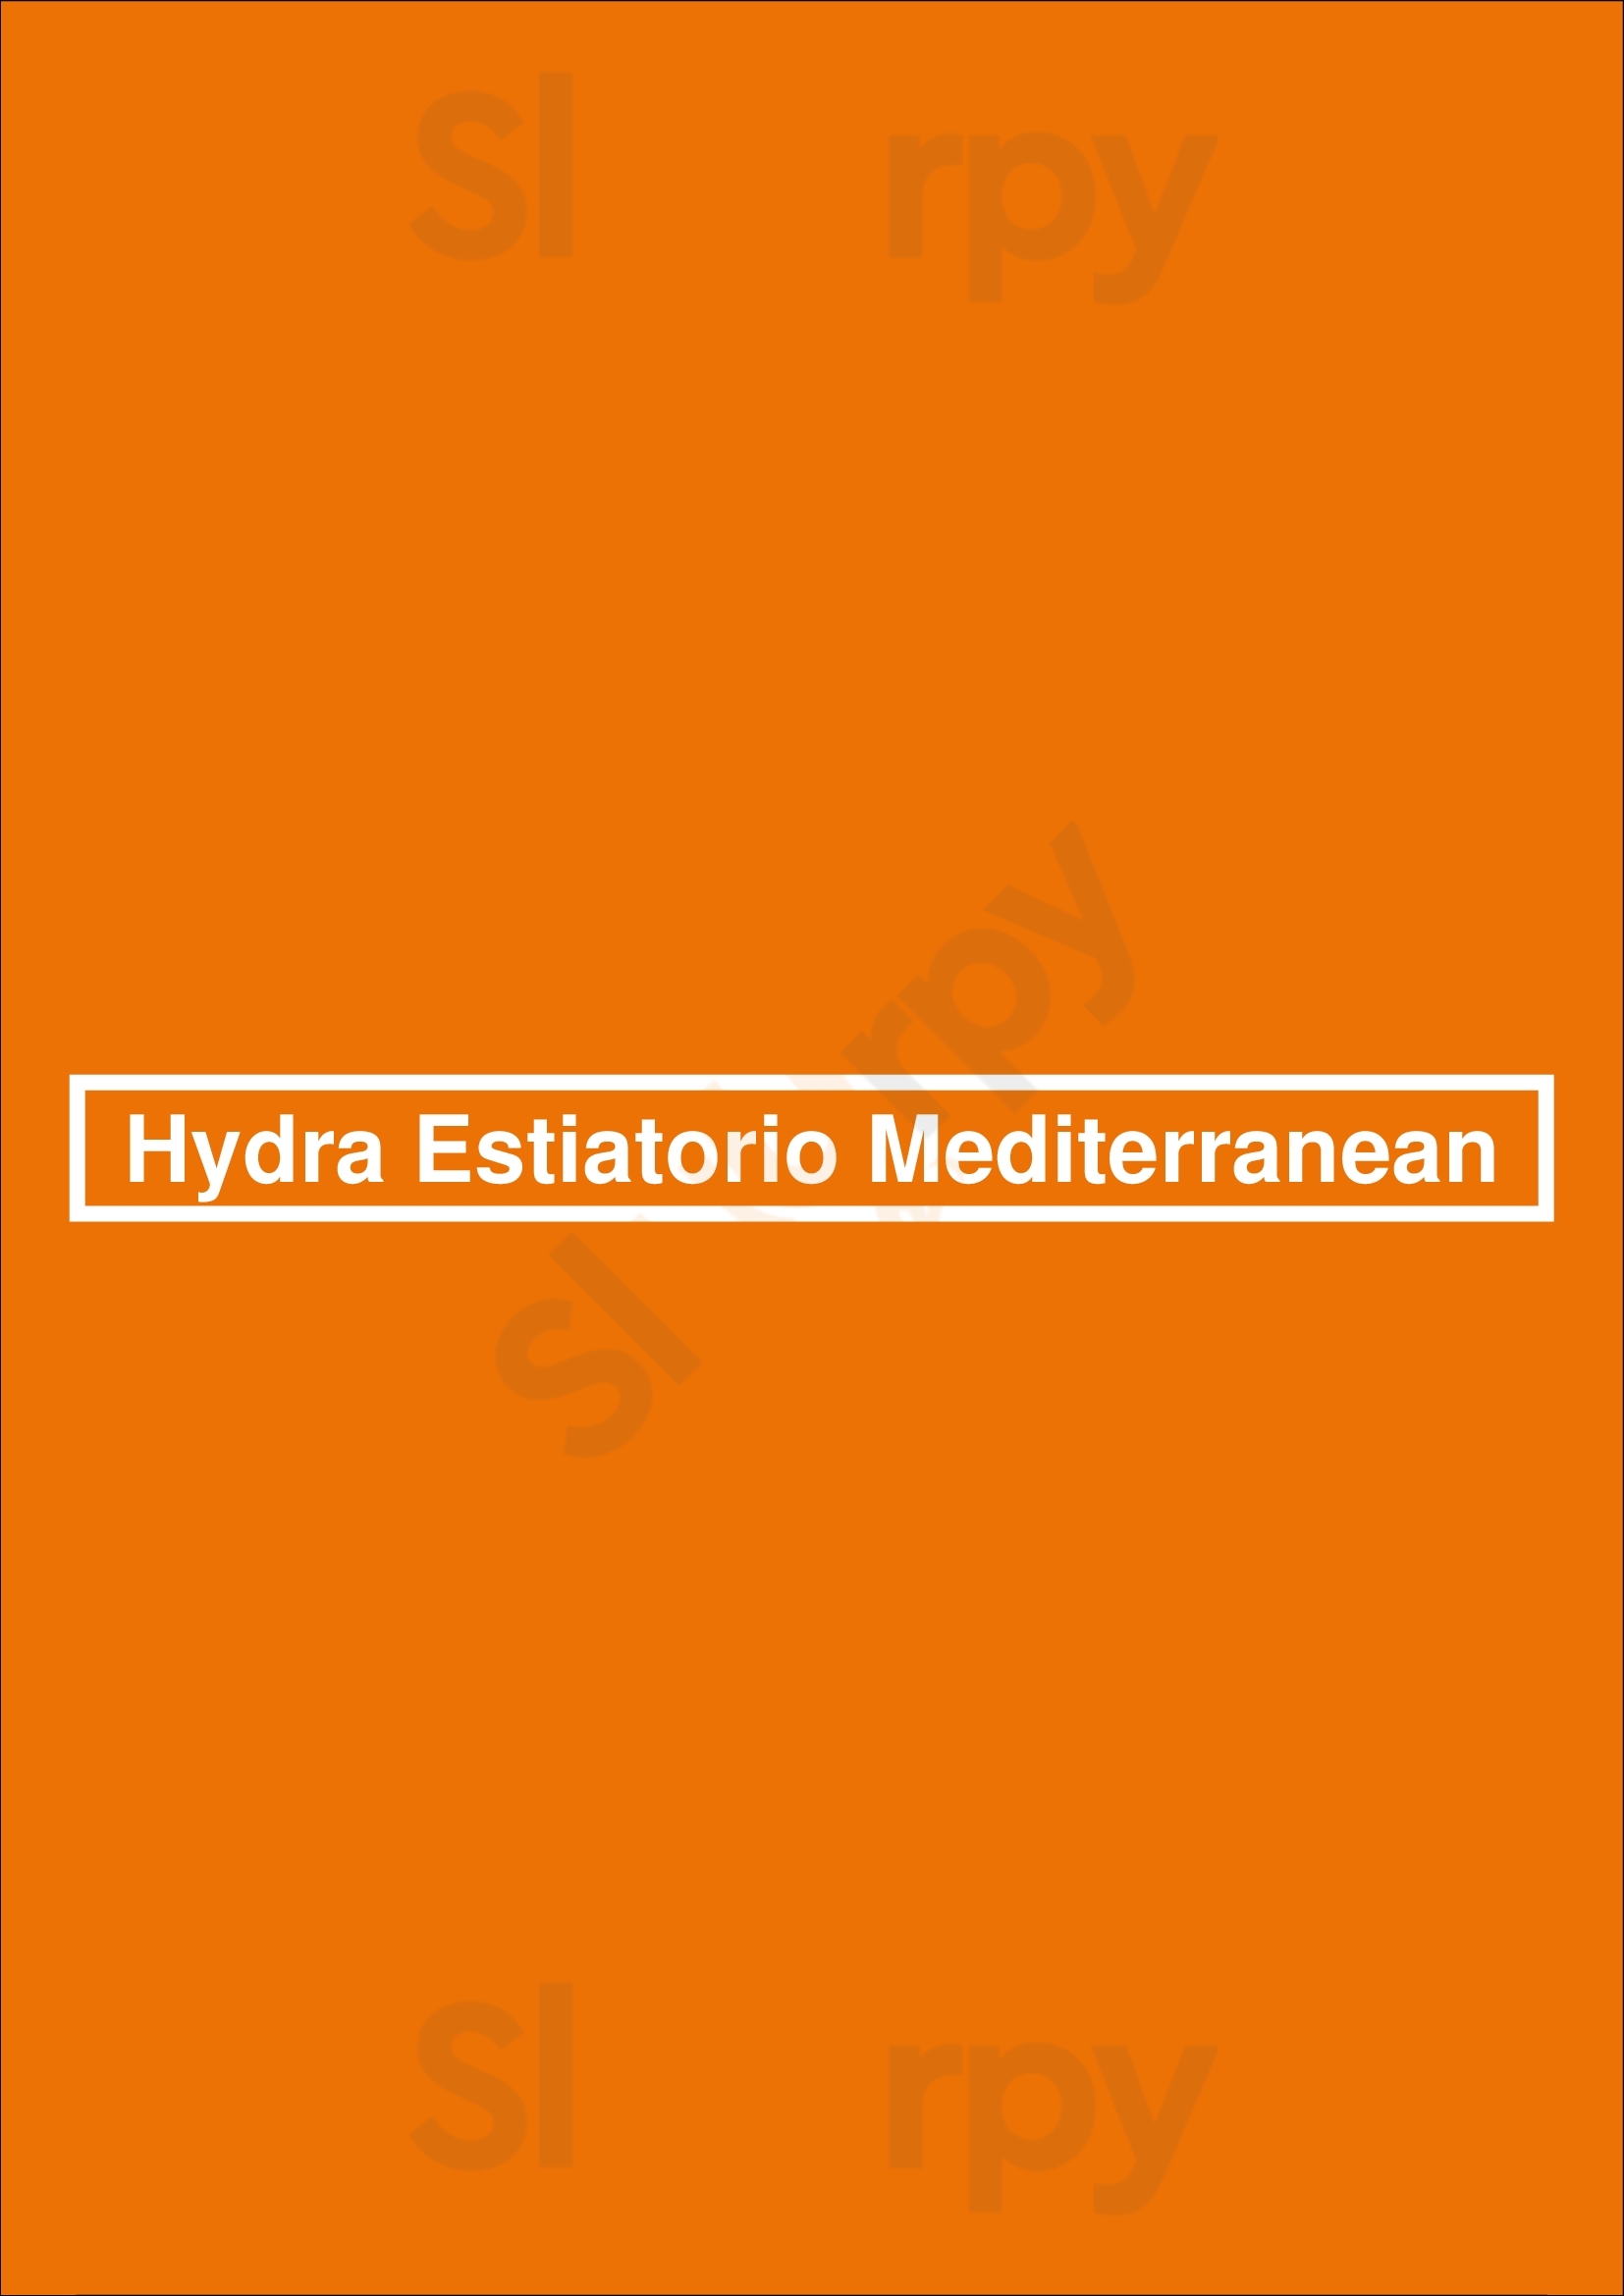 Hydra Estiatorio Mediterranean Vancouver Menu - 1